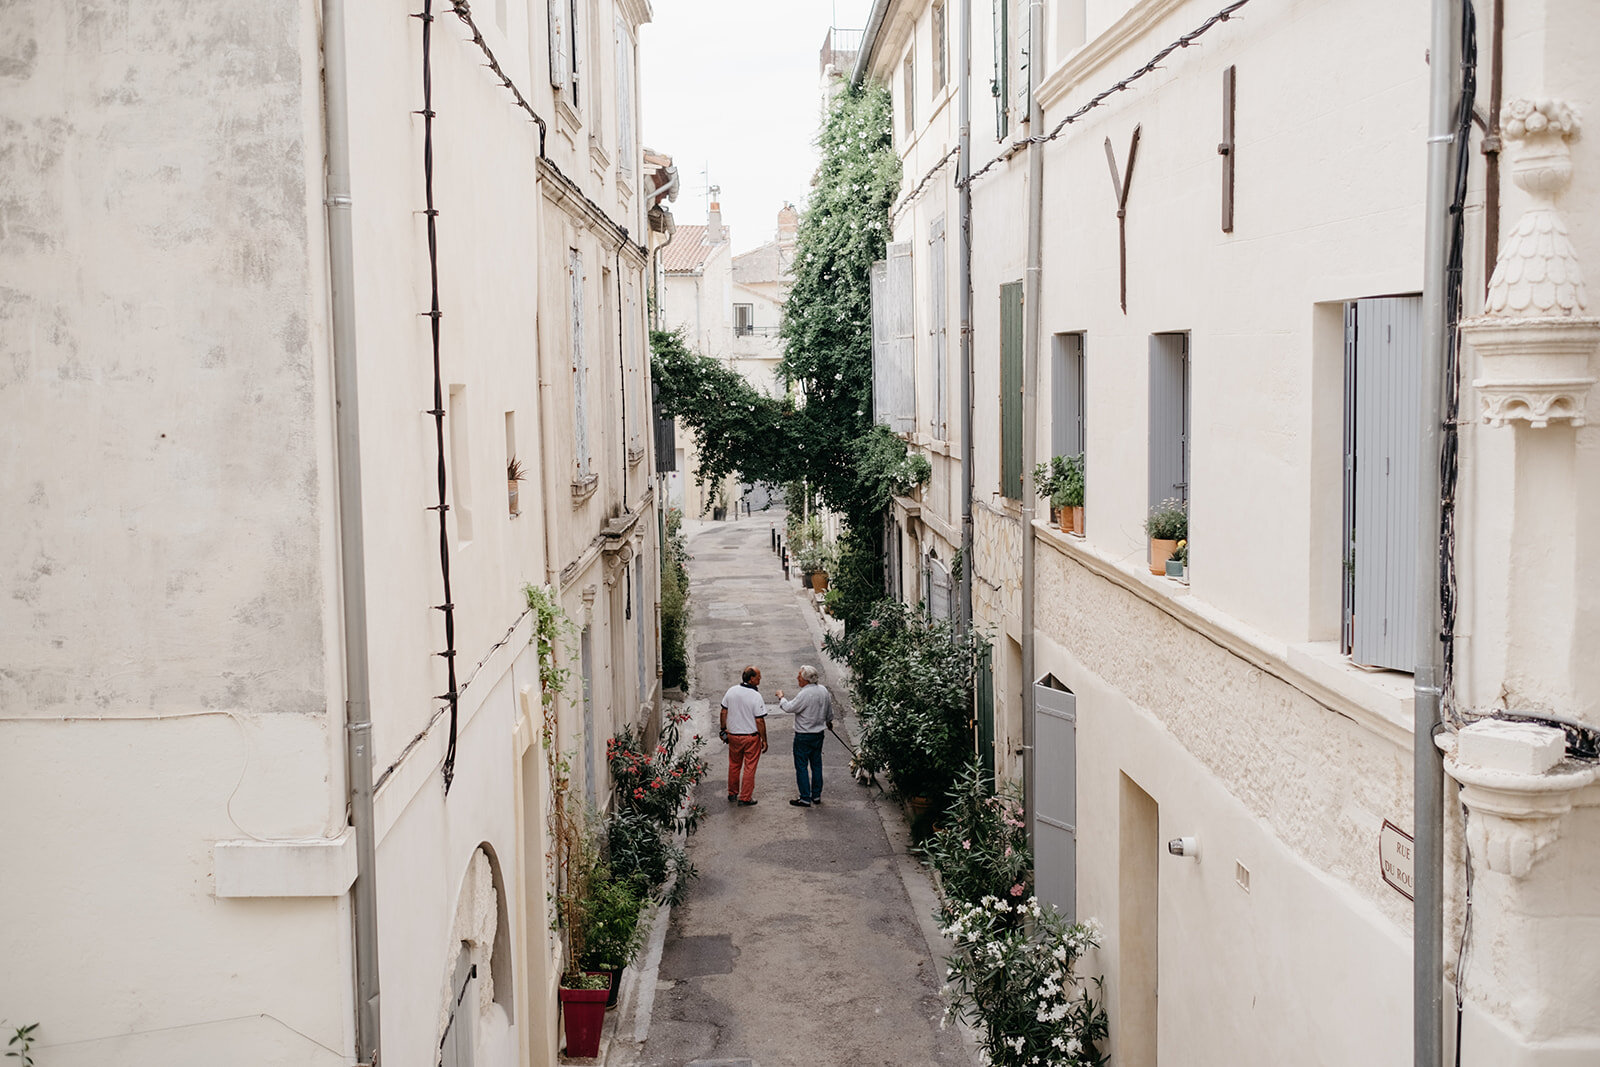 Two people walking down the street in Arles